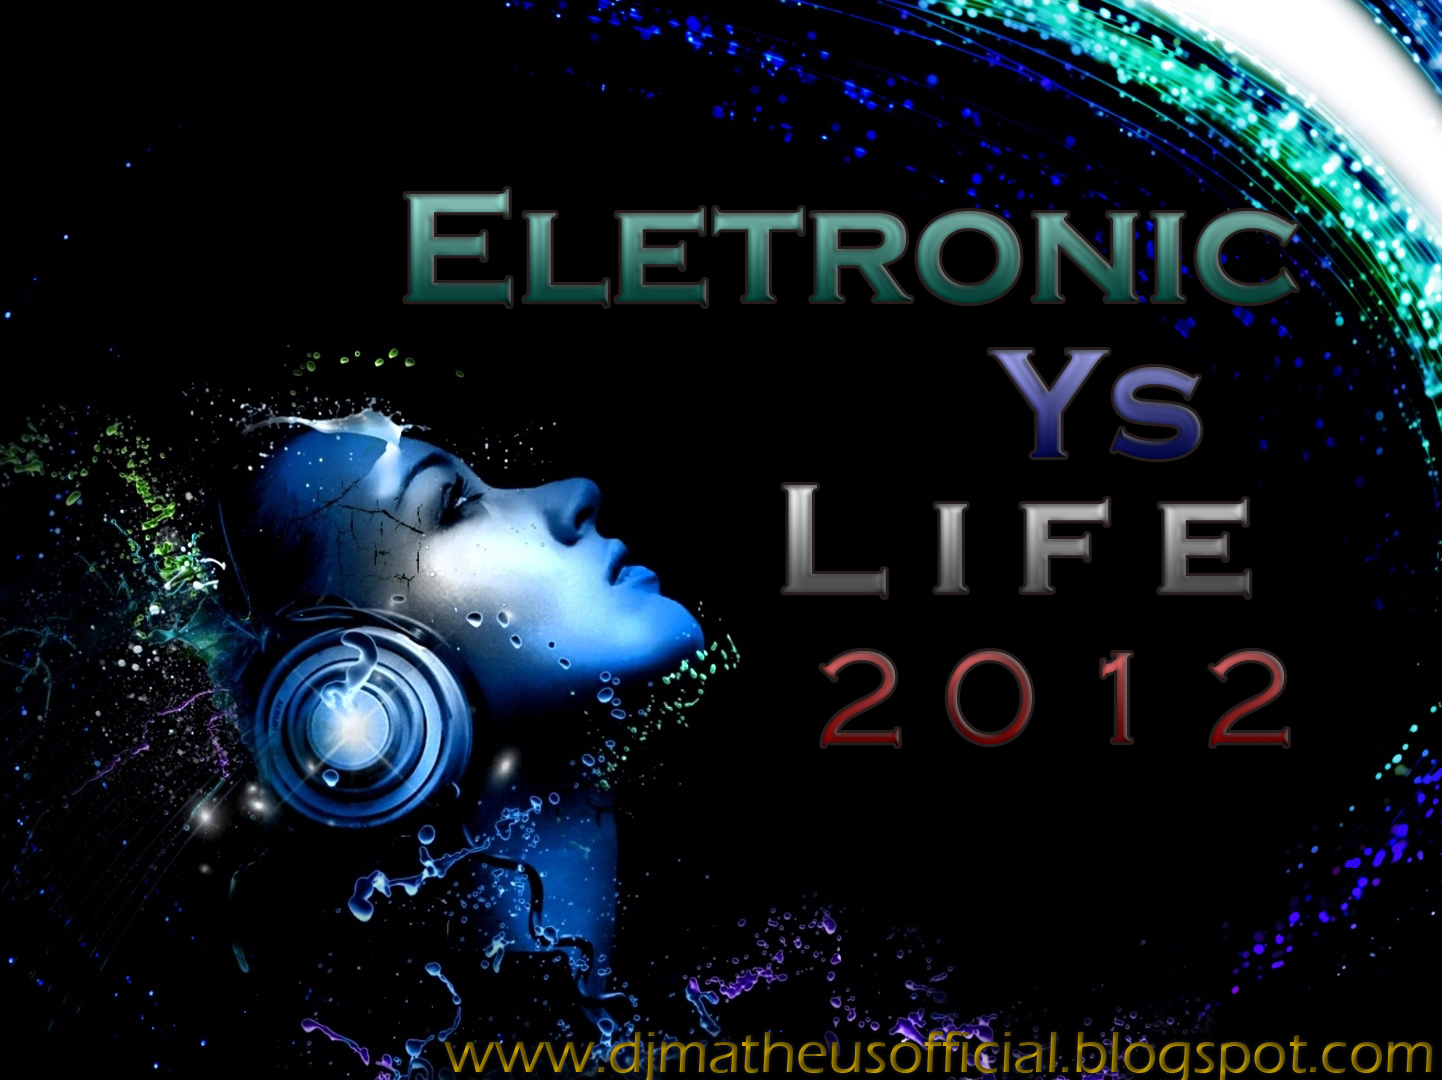 http://2.bp.blogspot.com/--MeIocHbFHI/T4cgQW5k5yI/AAAAAAAAAT4/oos75KnIRjg/s1600/ELETRONIC+YS+LIFE+2012+%2528CAPA%2529.jpg